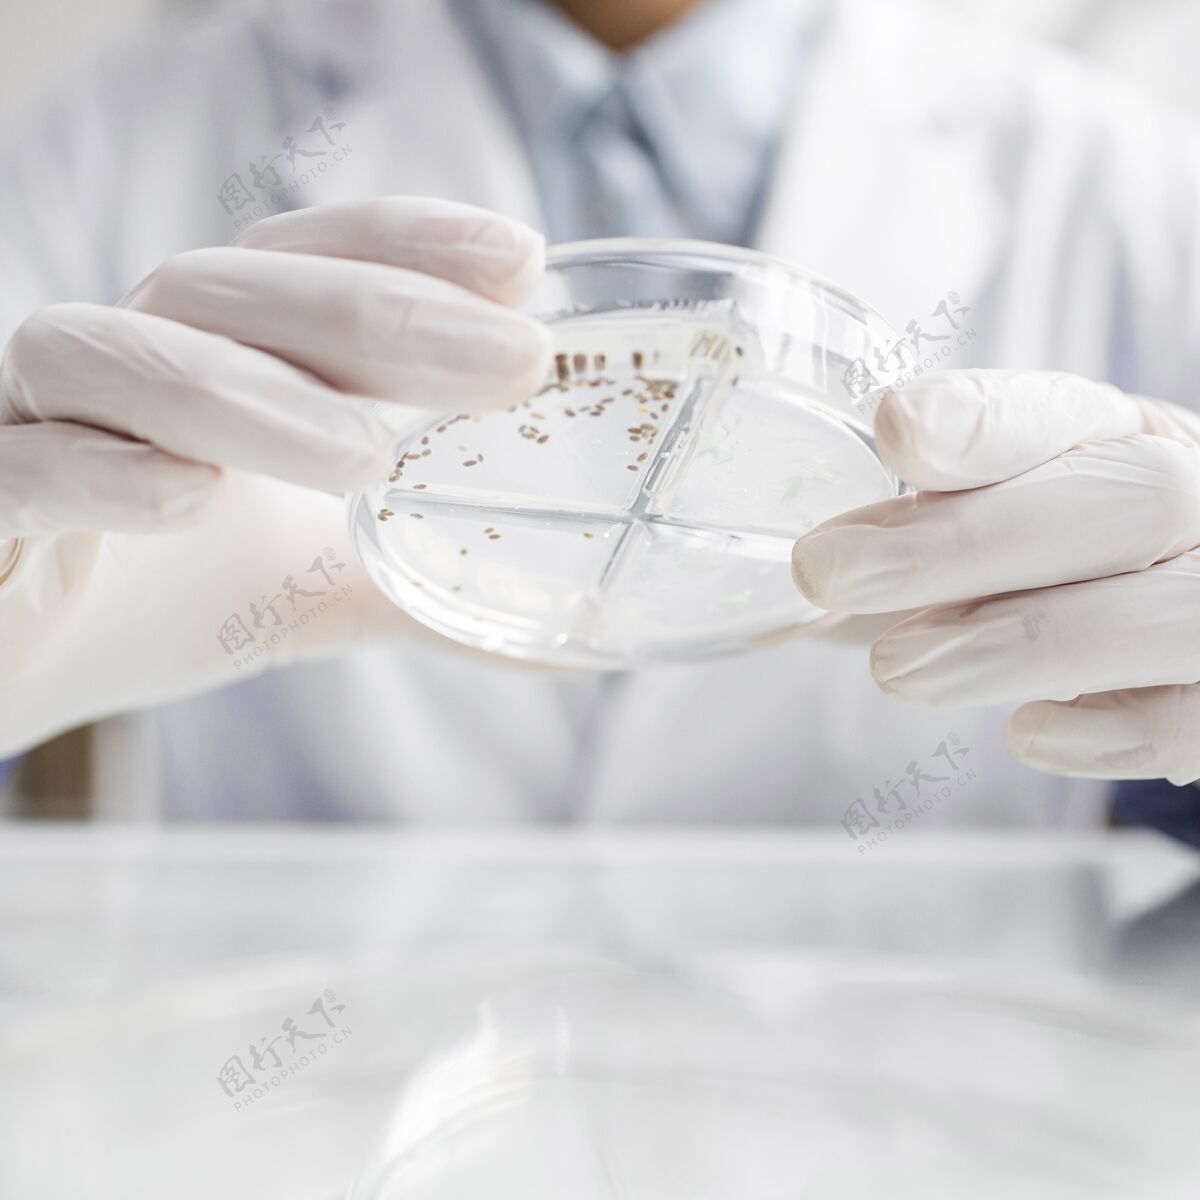 培养皿在生物技术实验室用培养皿研究人员技术分析研究人员